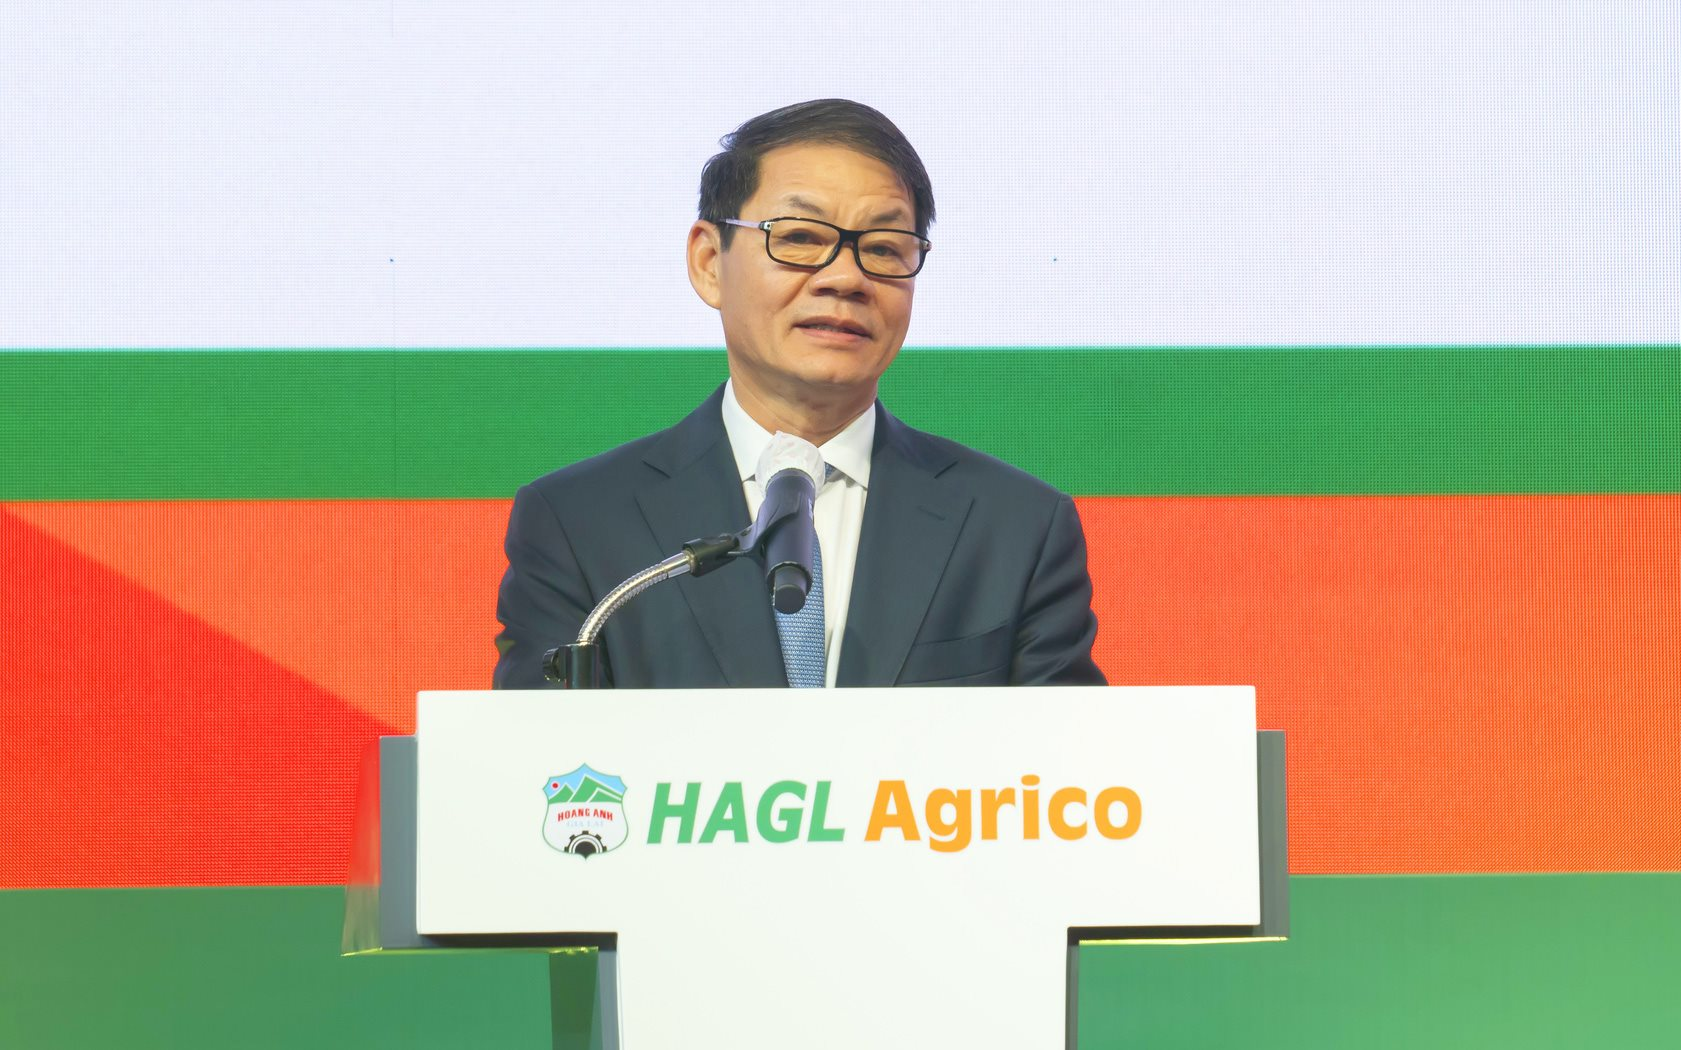 HAGL Agrico của tỷ phú Trần Bá Dương chốt triển khai siêu dự án 750 triệu USD tại Lào, dự kiến lợi nhuận 2.450 tỷ đồng/năm kể từ 2028